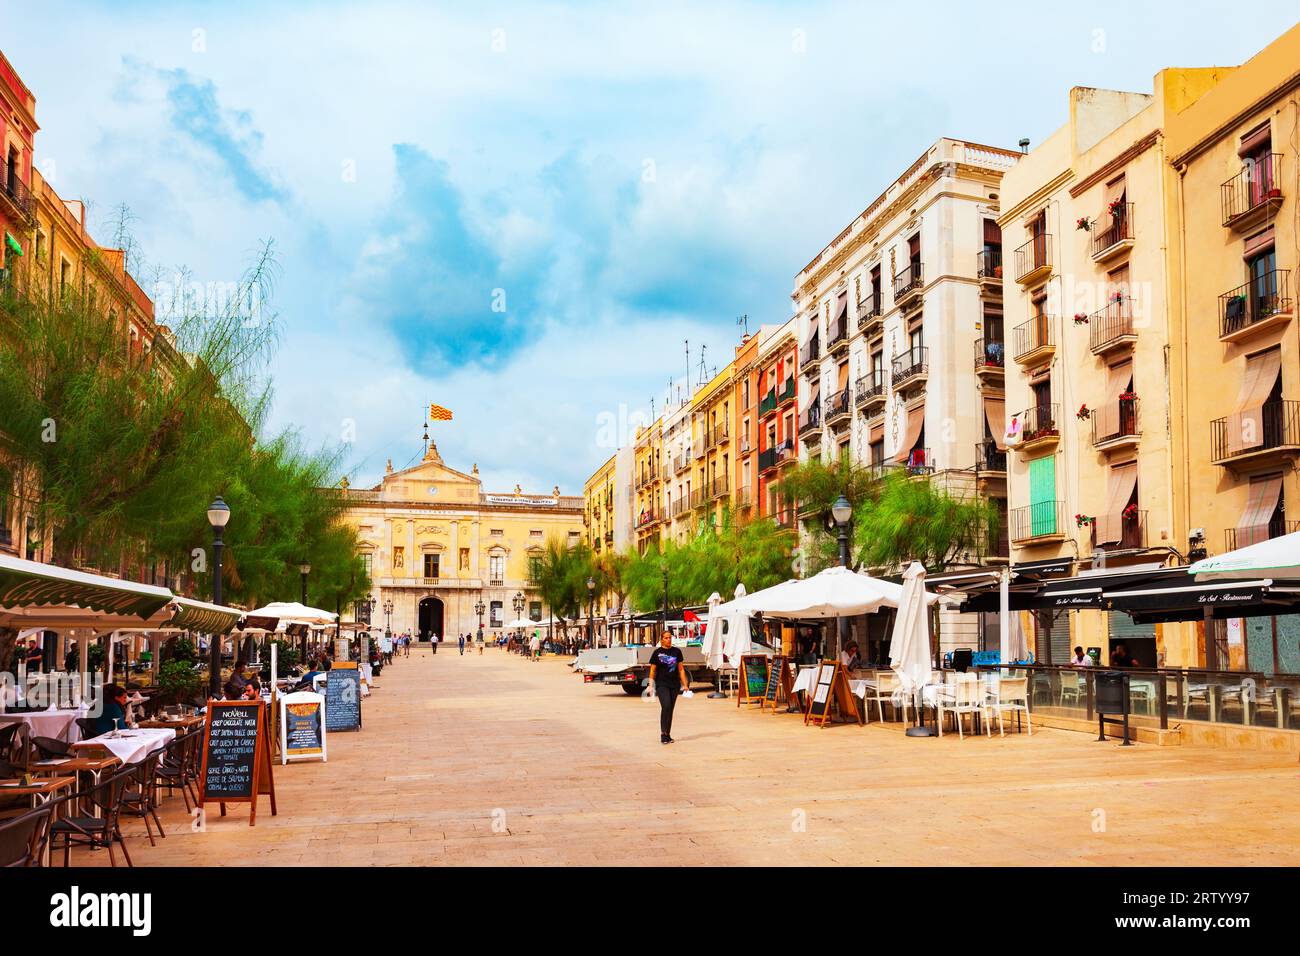 Tarragona, Spanien - 15. Oktober 2021: Rathaus oder Ajuntament in Tarragona. Tarragona ist eine Hafenstadt im Nordosten Spaniens an der Costa Daurada by Stockfoto